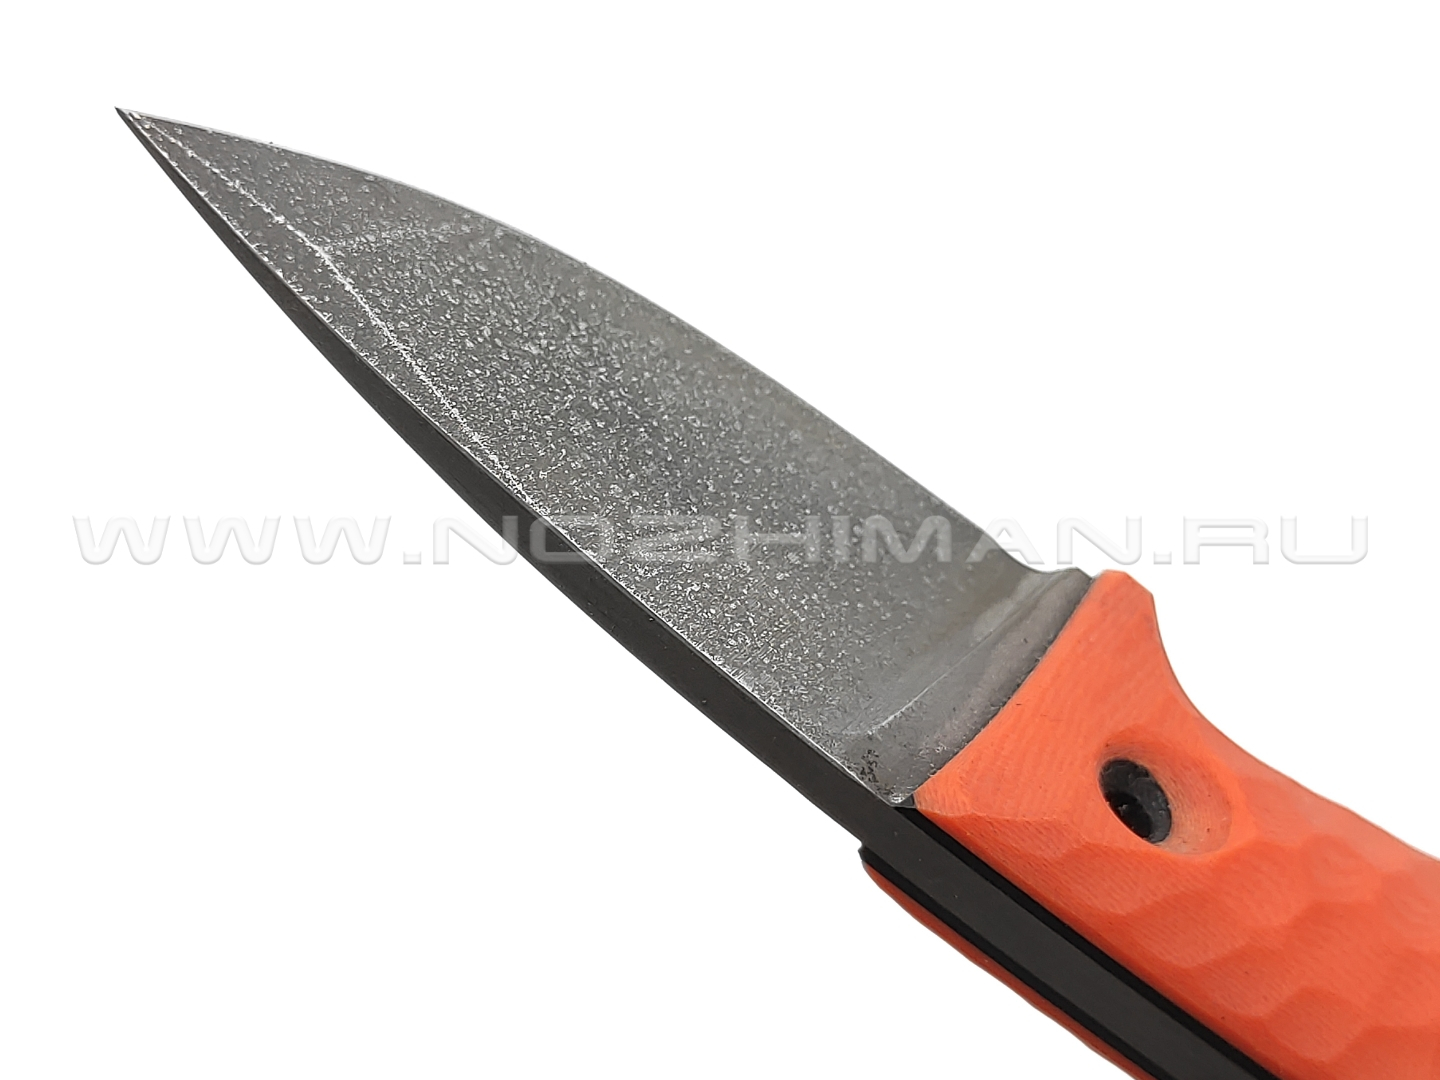 Dyag knives нож Model06_2 сталь N690, рукоять G10 orange